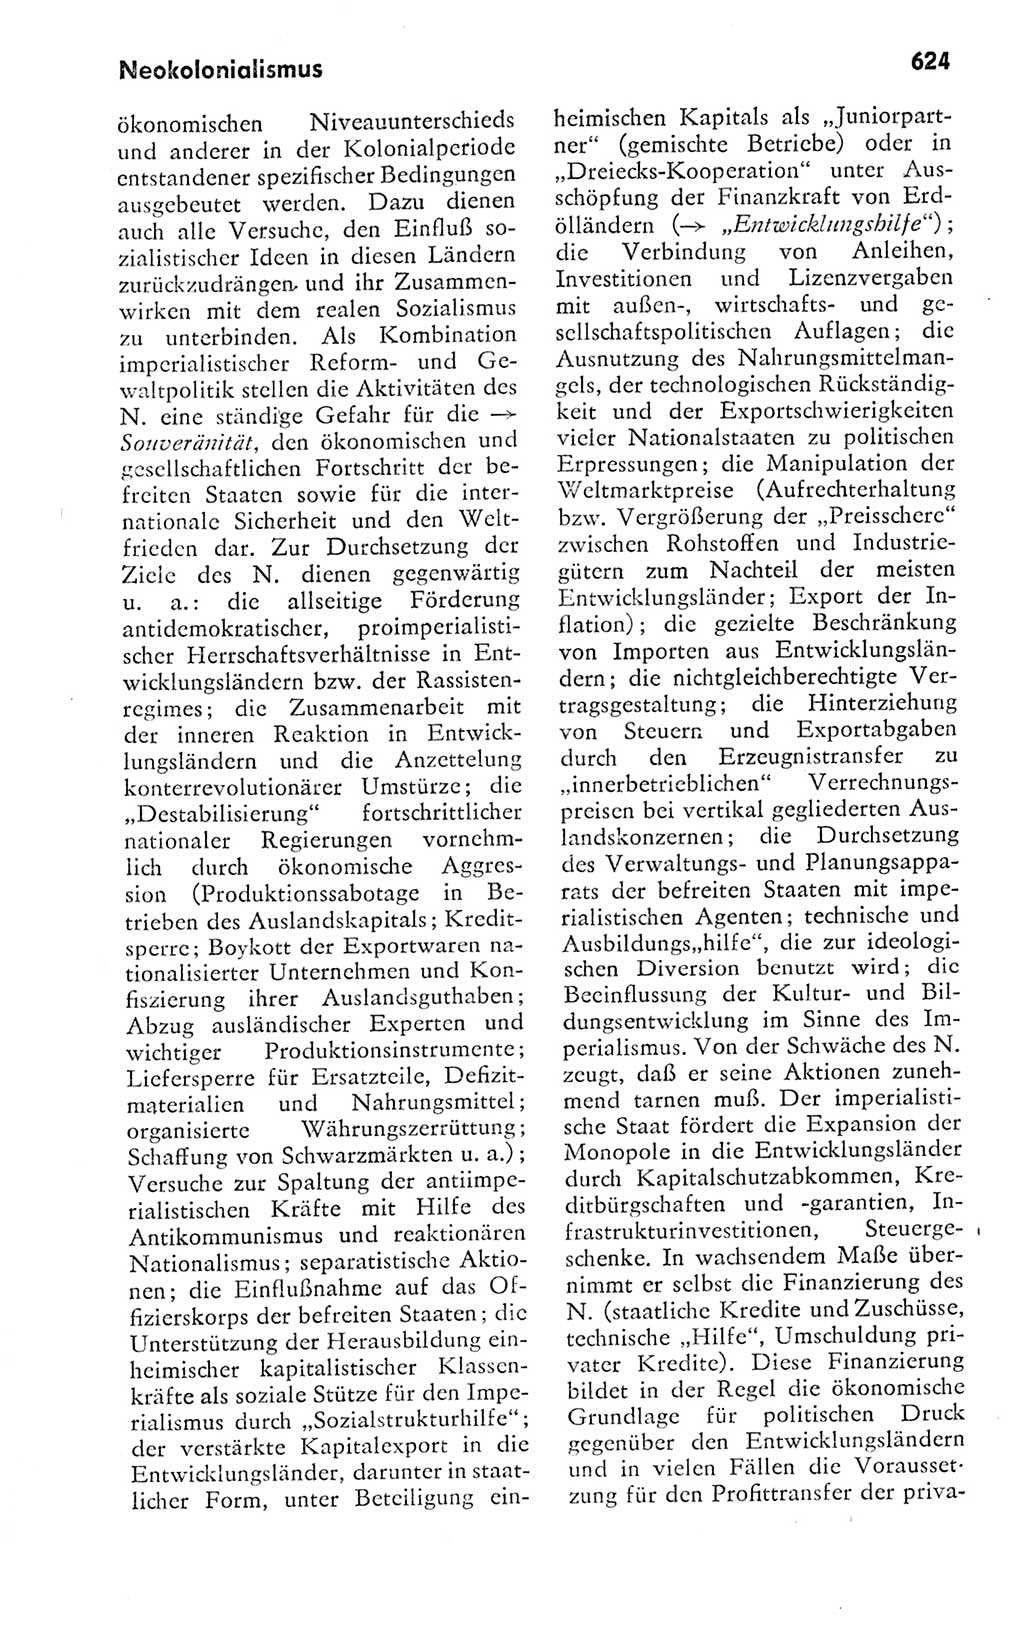 Kleines politisches Wörterbuch [Deutsche Demokratische Republik (DDR)] 1978, Seite 624 (Kl. pol. Wb. DDR 1978, S. 624)